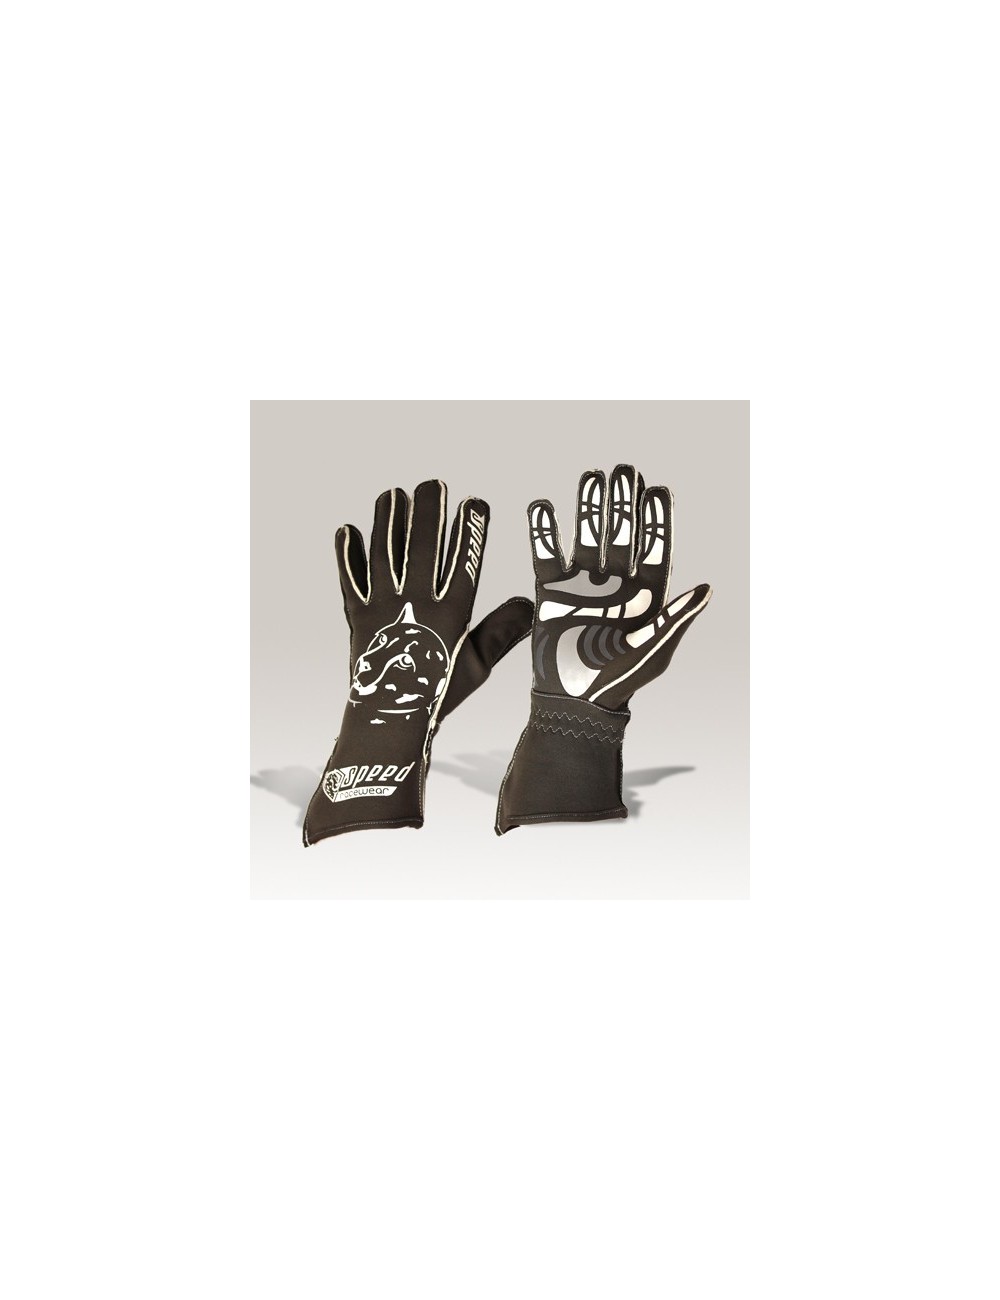 Speed Handschuhe Melbourne G-2 grau-weiß